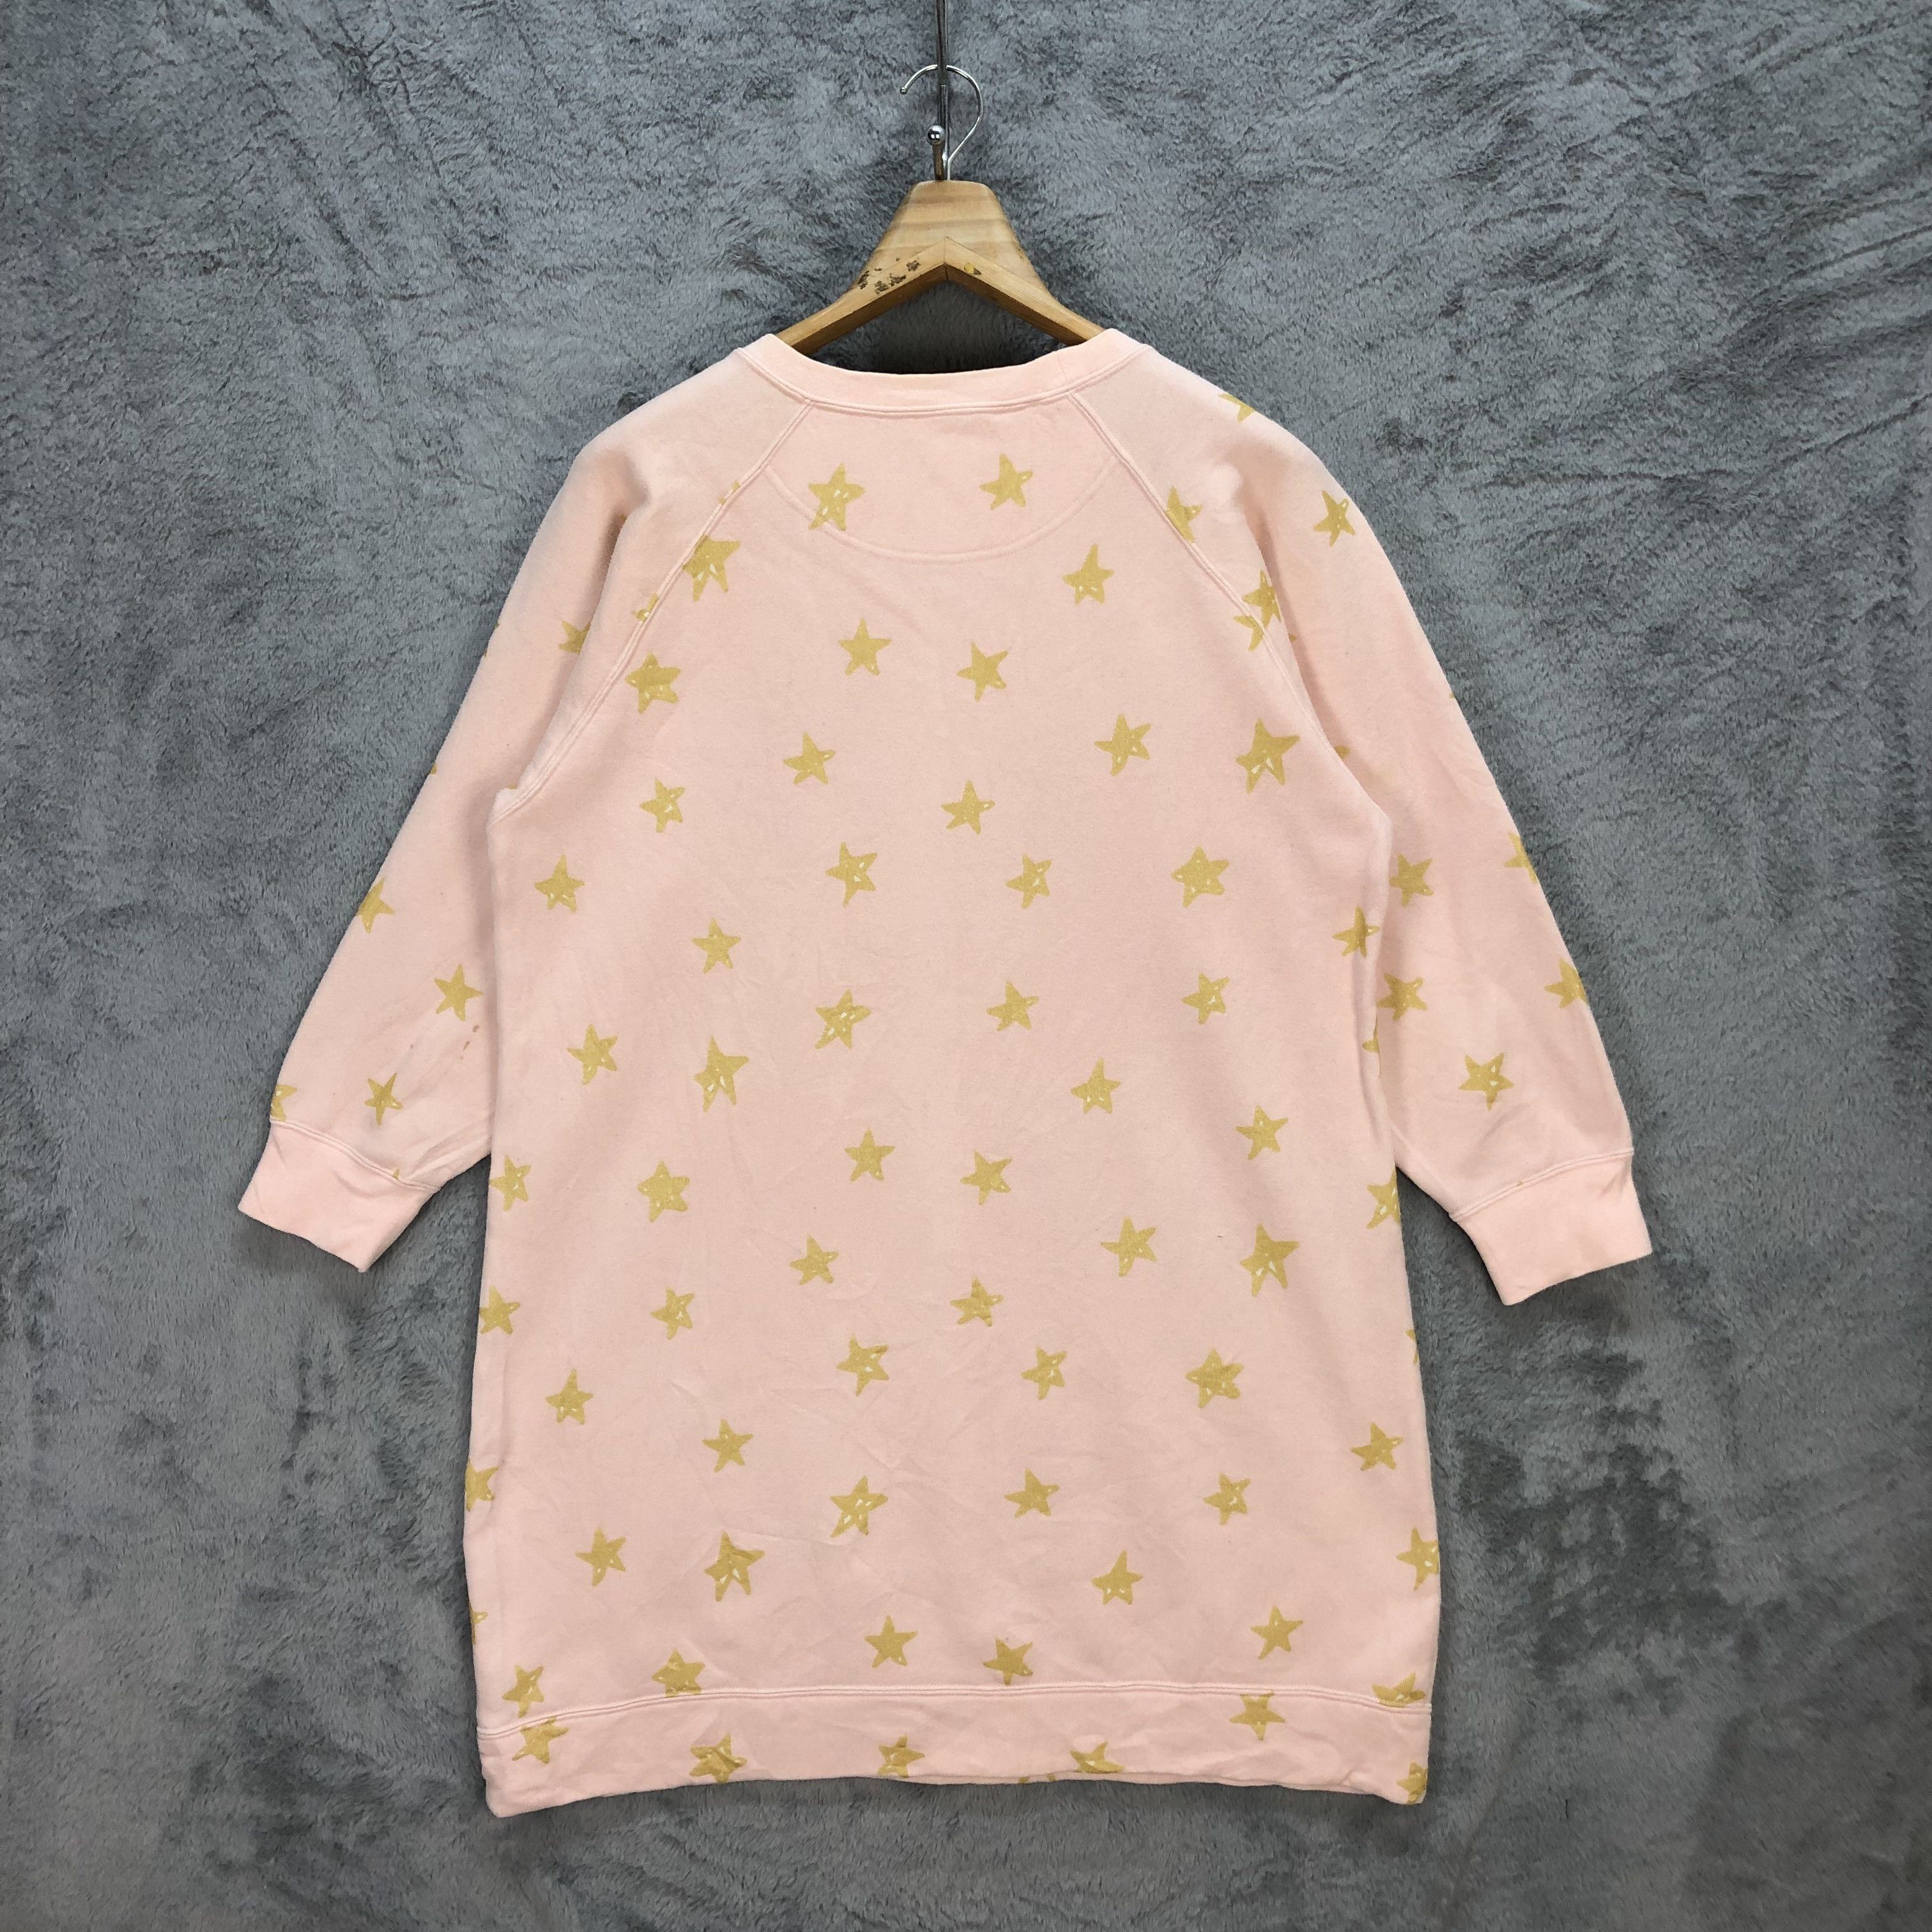 Tsumori Chisato Sleep Star Fleece Long Sweatshirts #5682-202 - 13